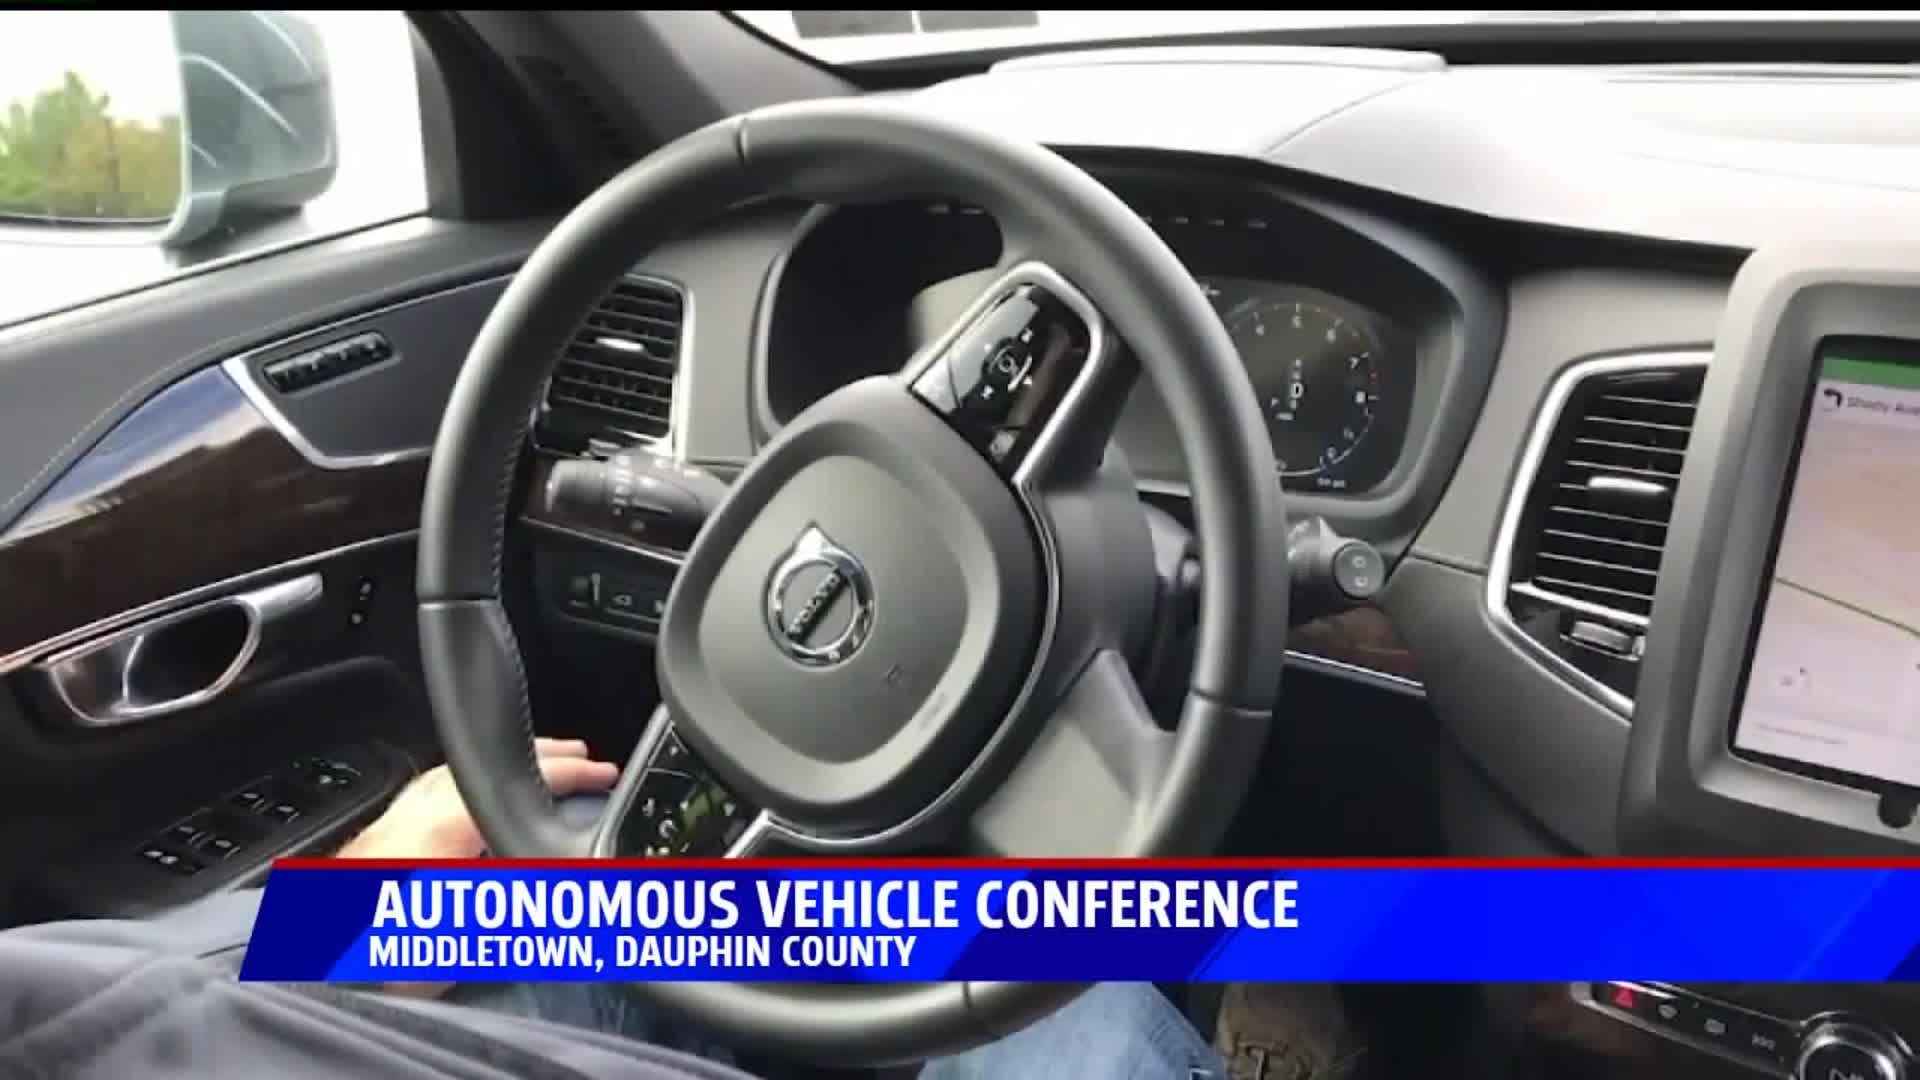 Autonomous vehicle conference